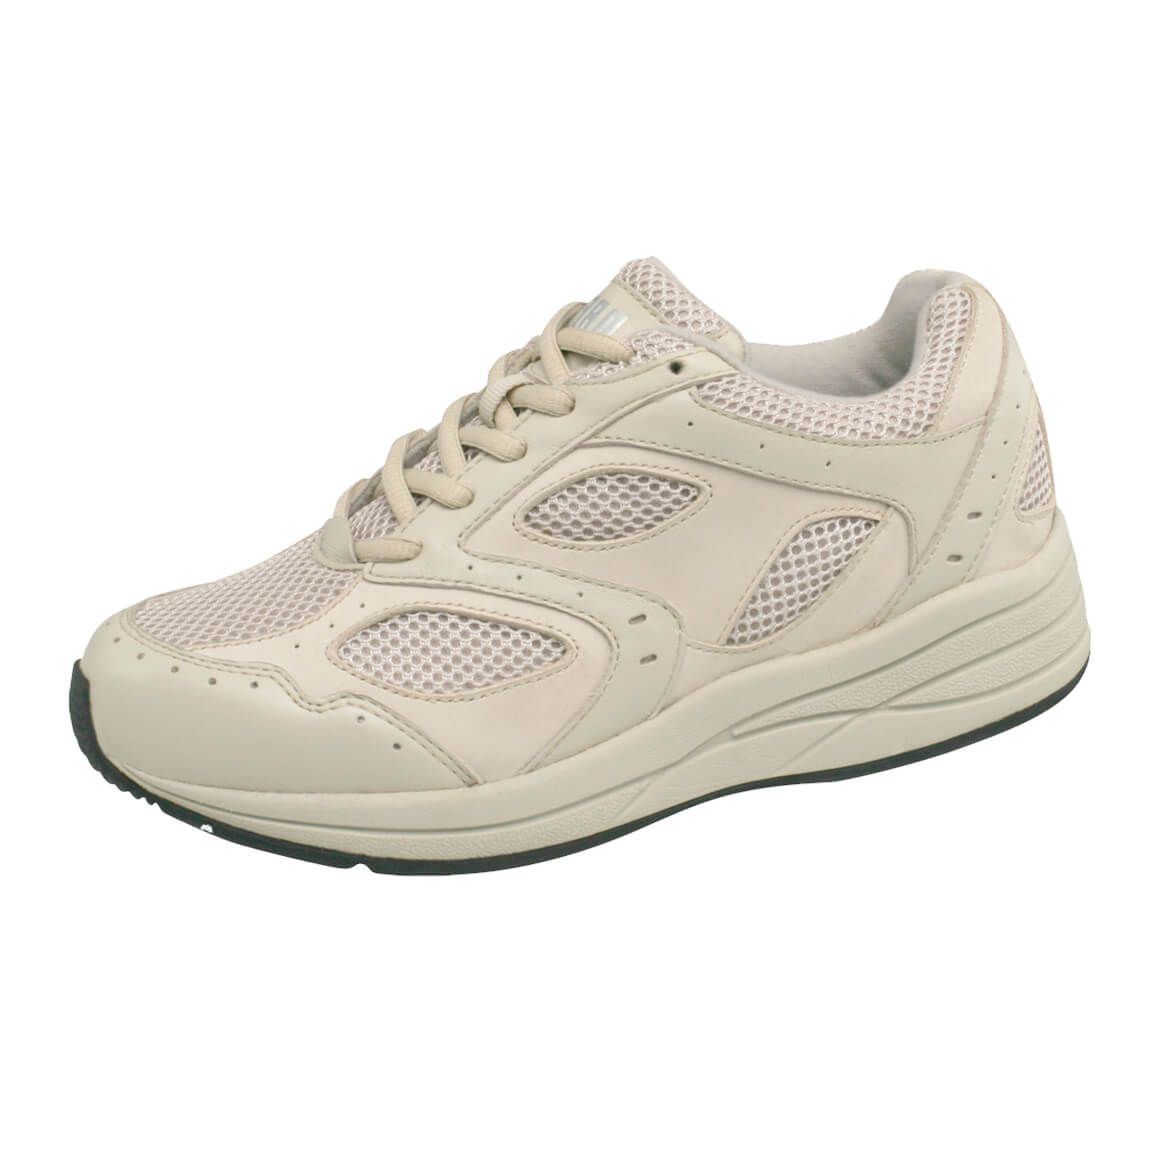 Drew® Flare Women's Walking Shoe + '-' + 363604